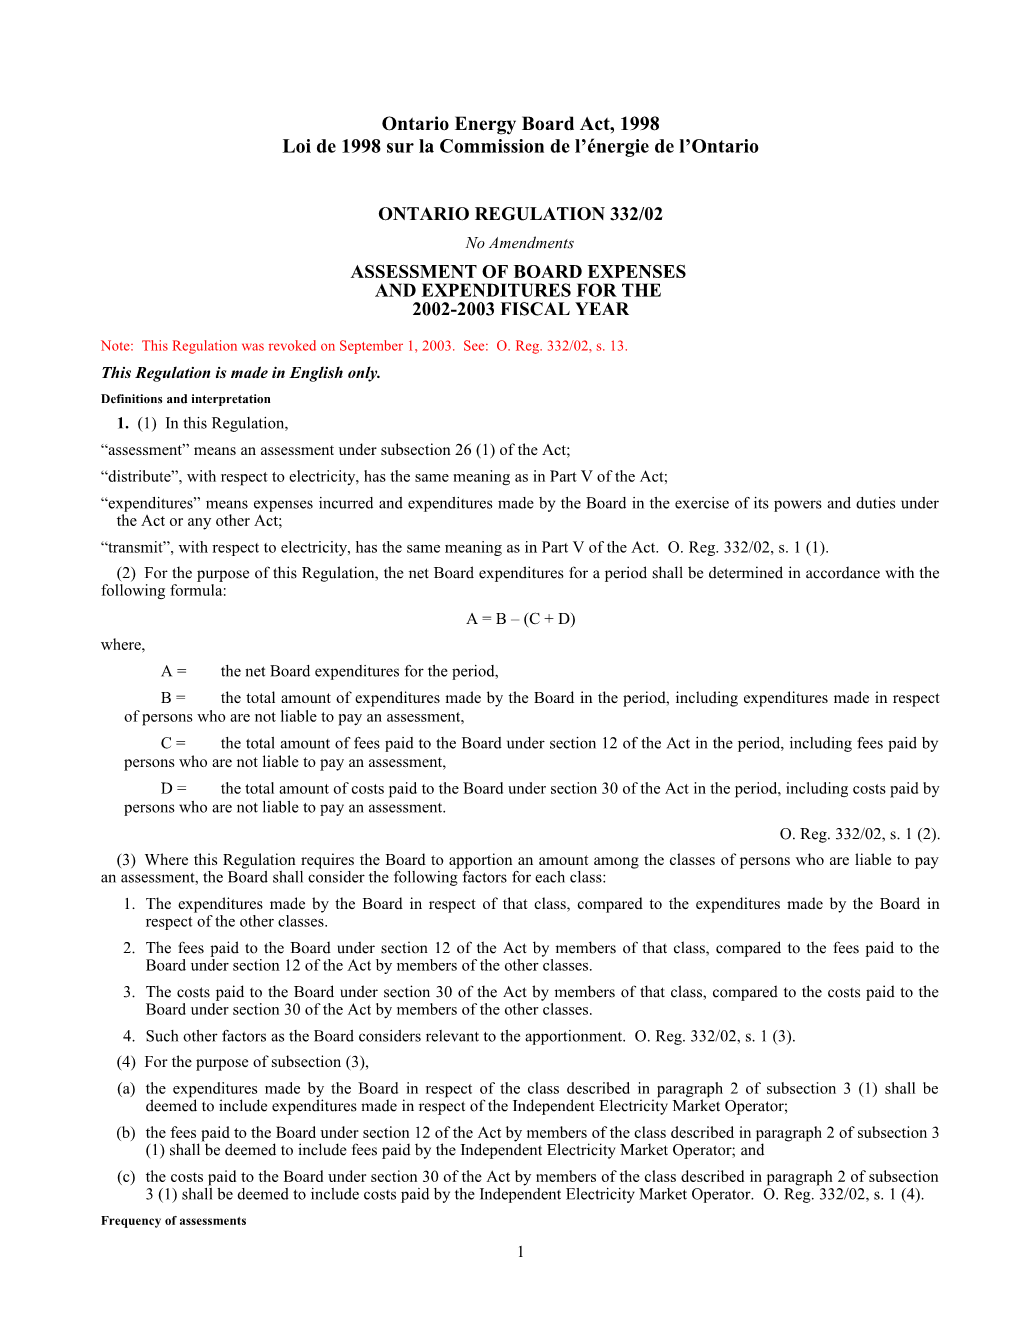 Ontario Energy Board Act, 1998 - O. Reg. 332/02